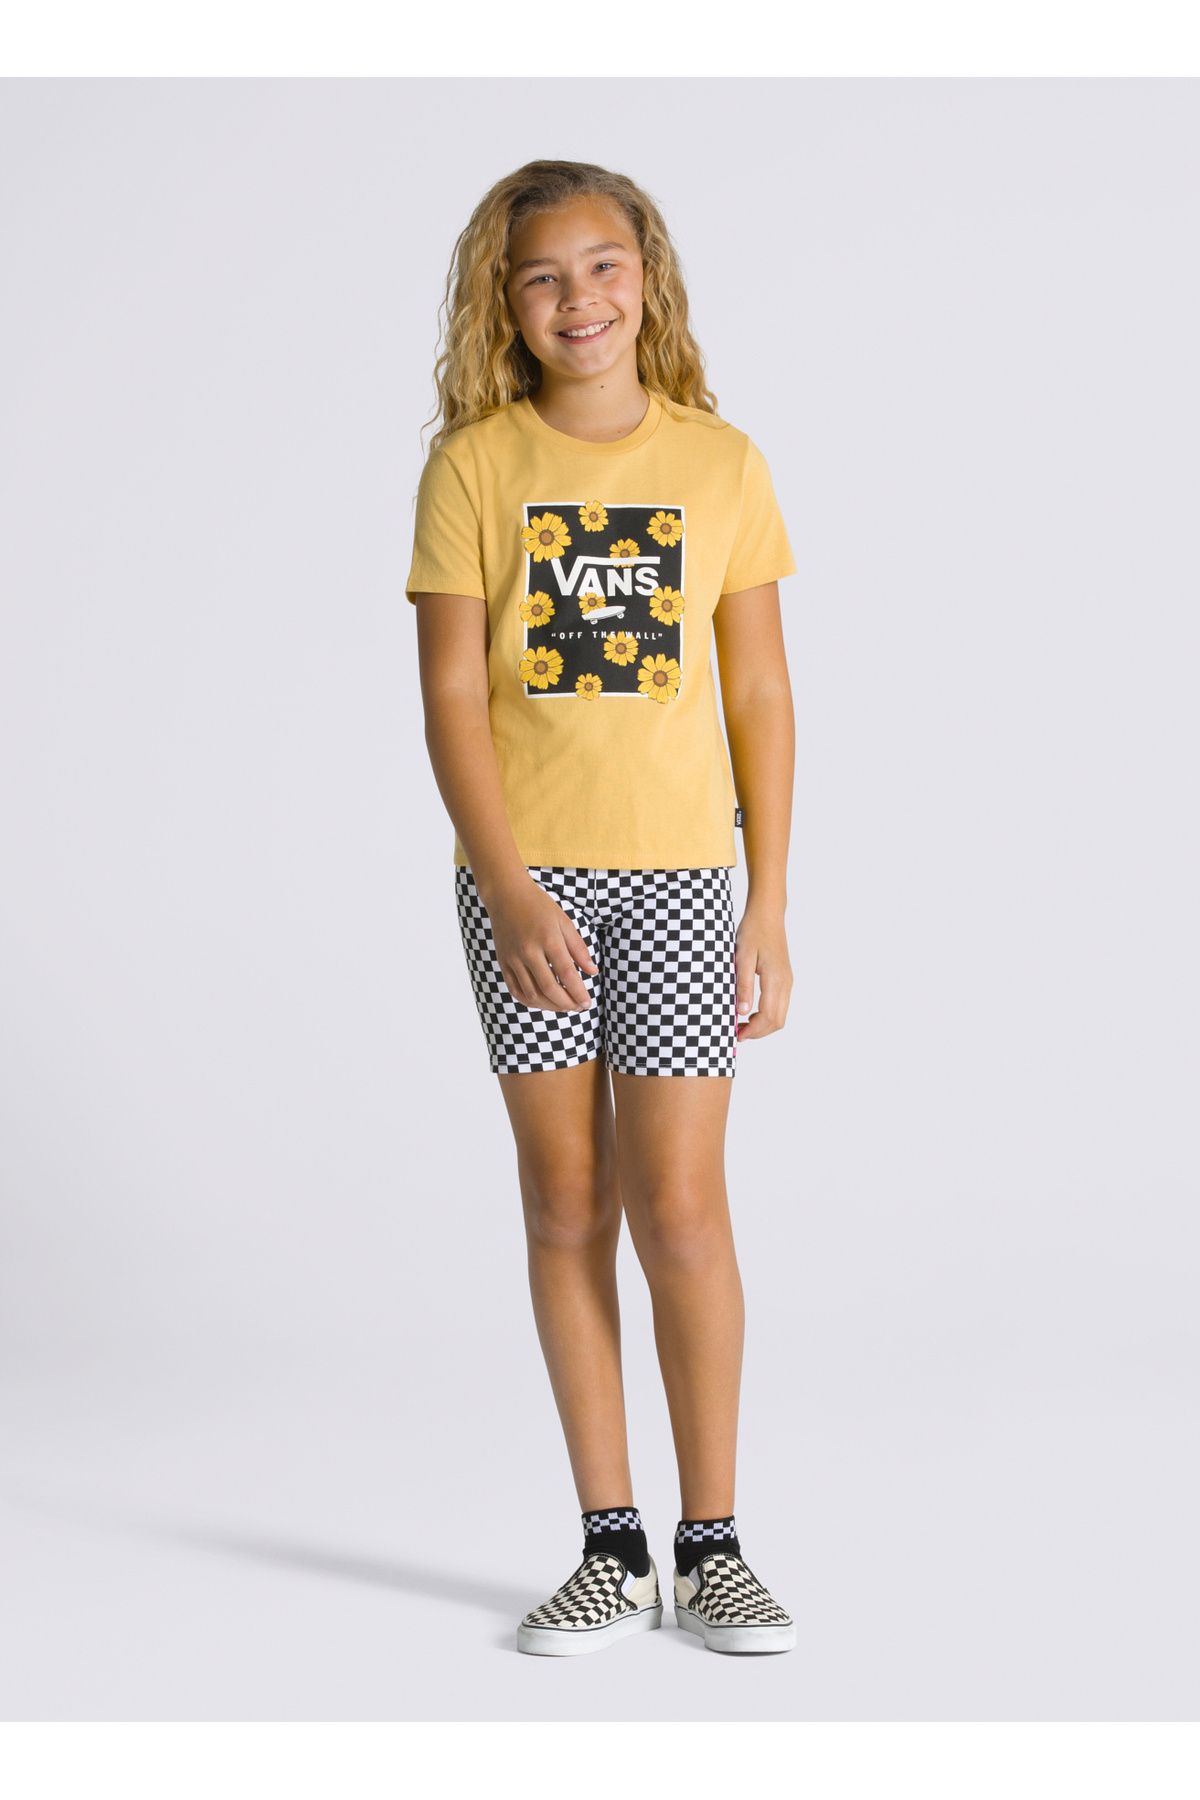 Vans Düz Sarı Kız Çocuk T-Shirt VN00078WOC21 SUNFLOWER ANIMAL BOX C